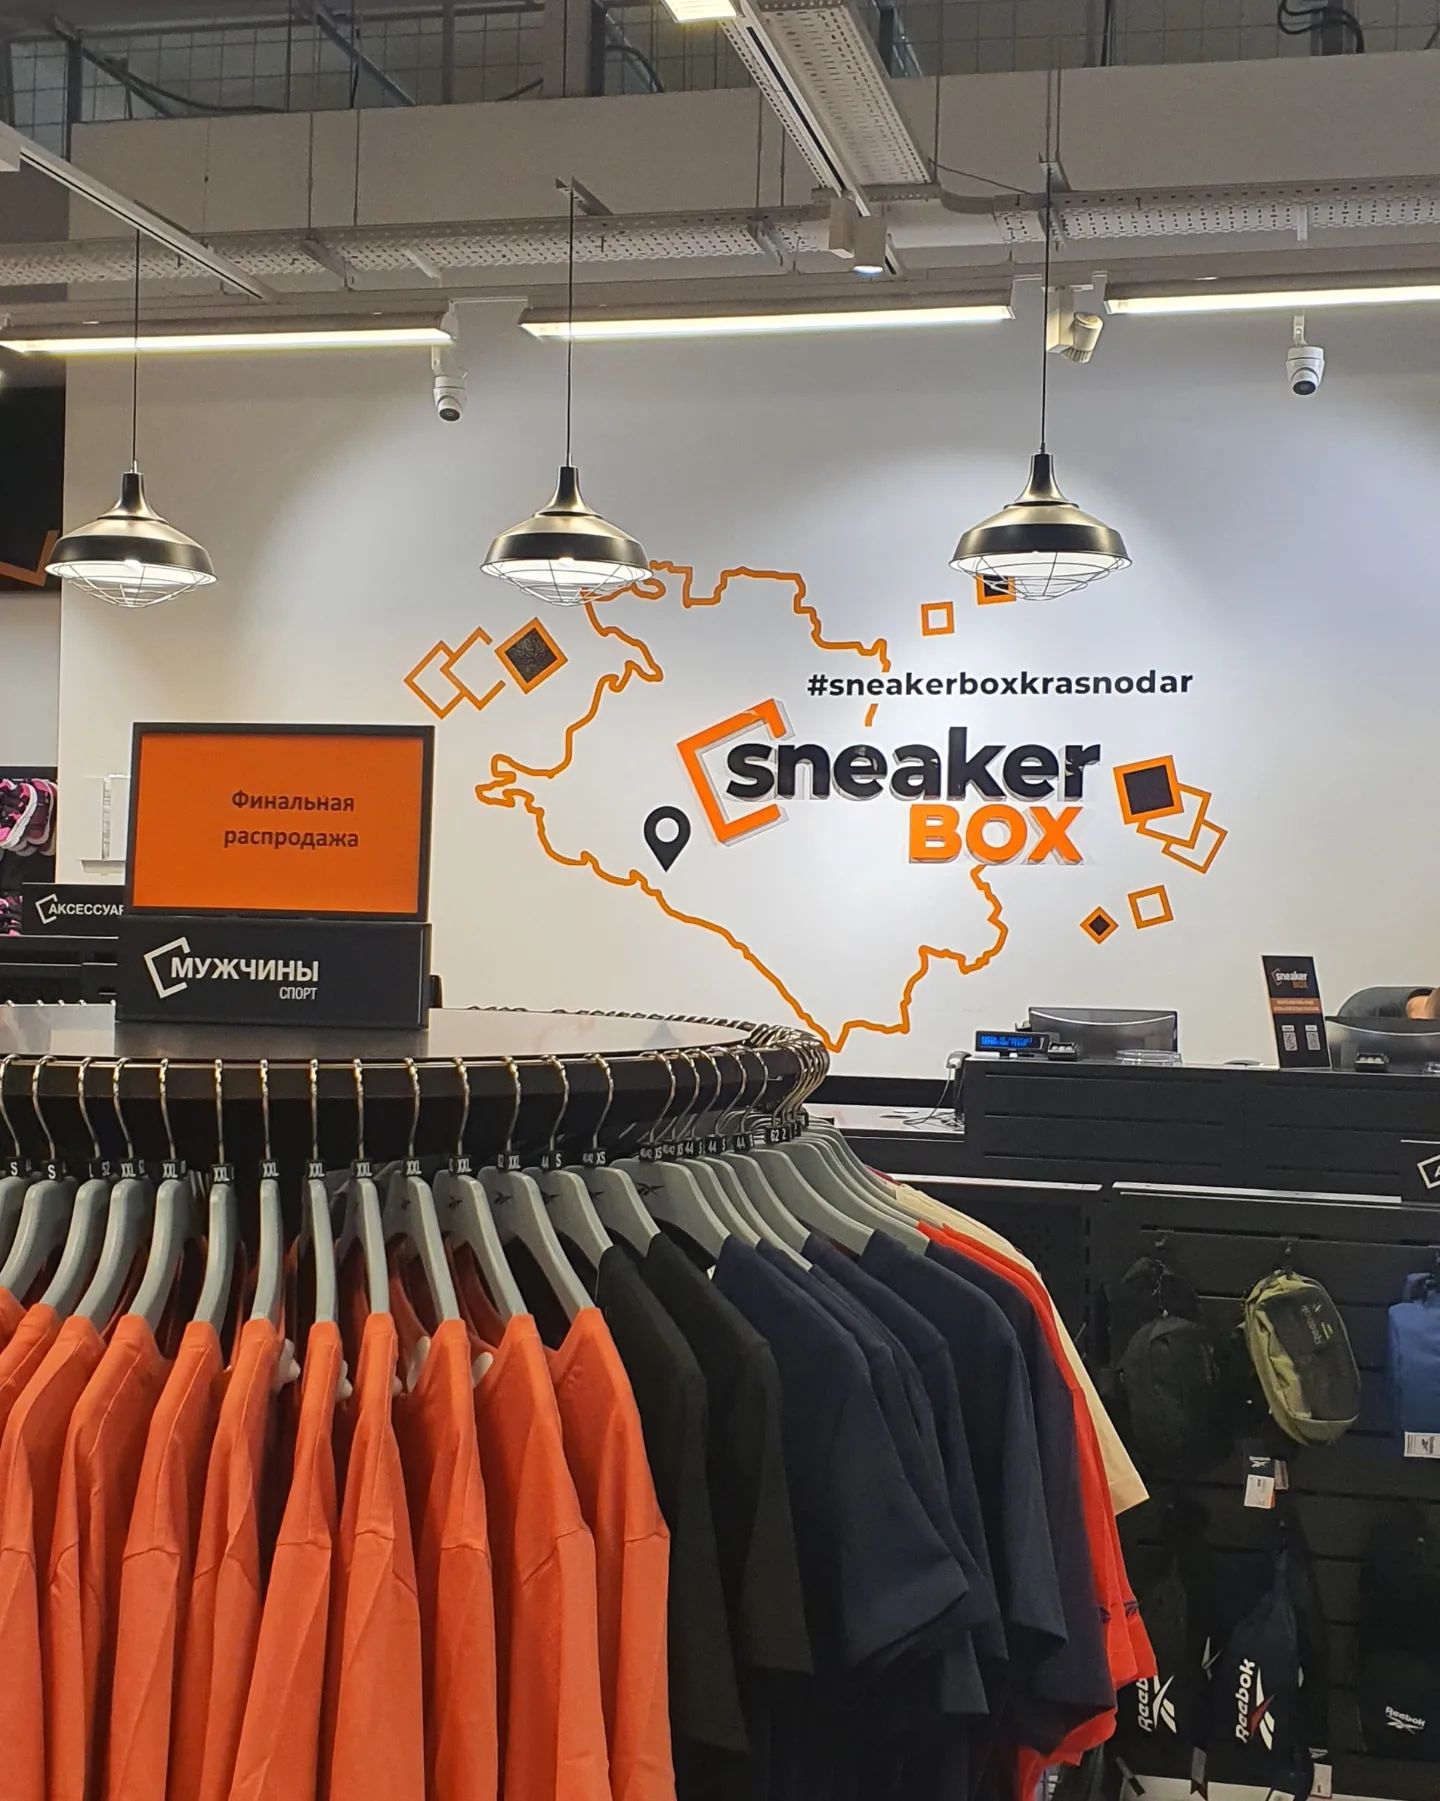 А какой повод, чтобы одеться в Sneaker Box  находишь ты?